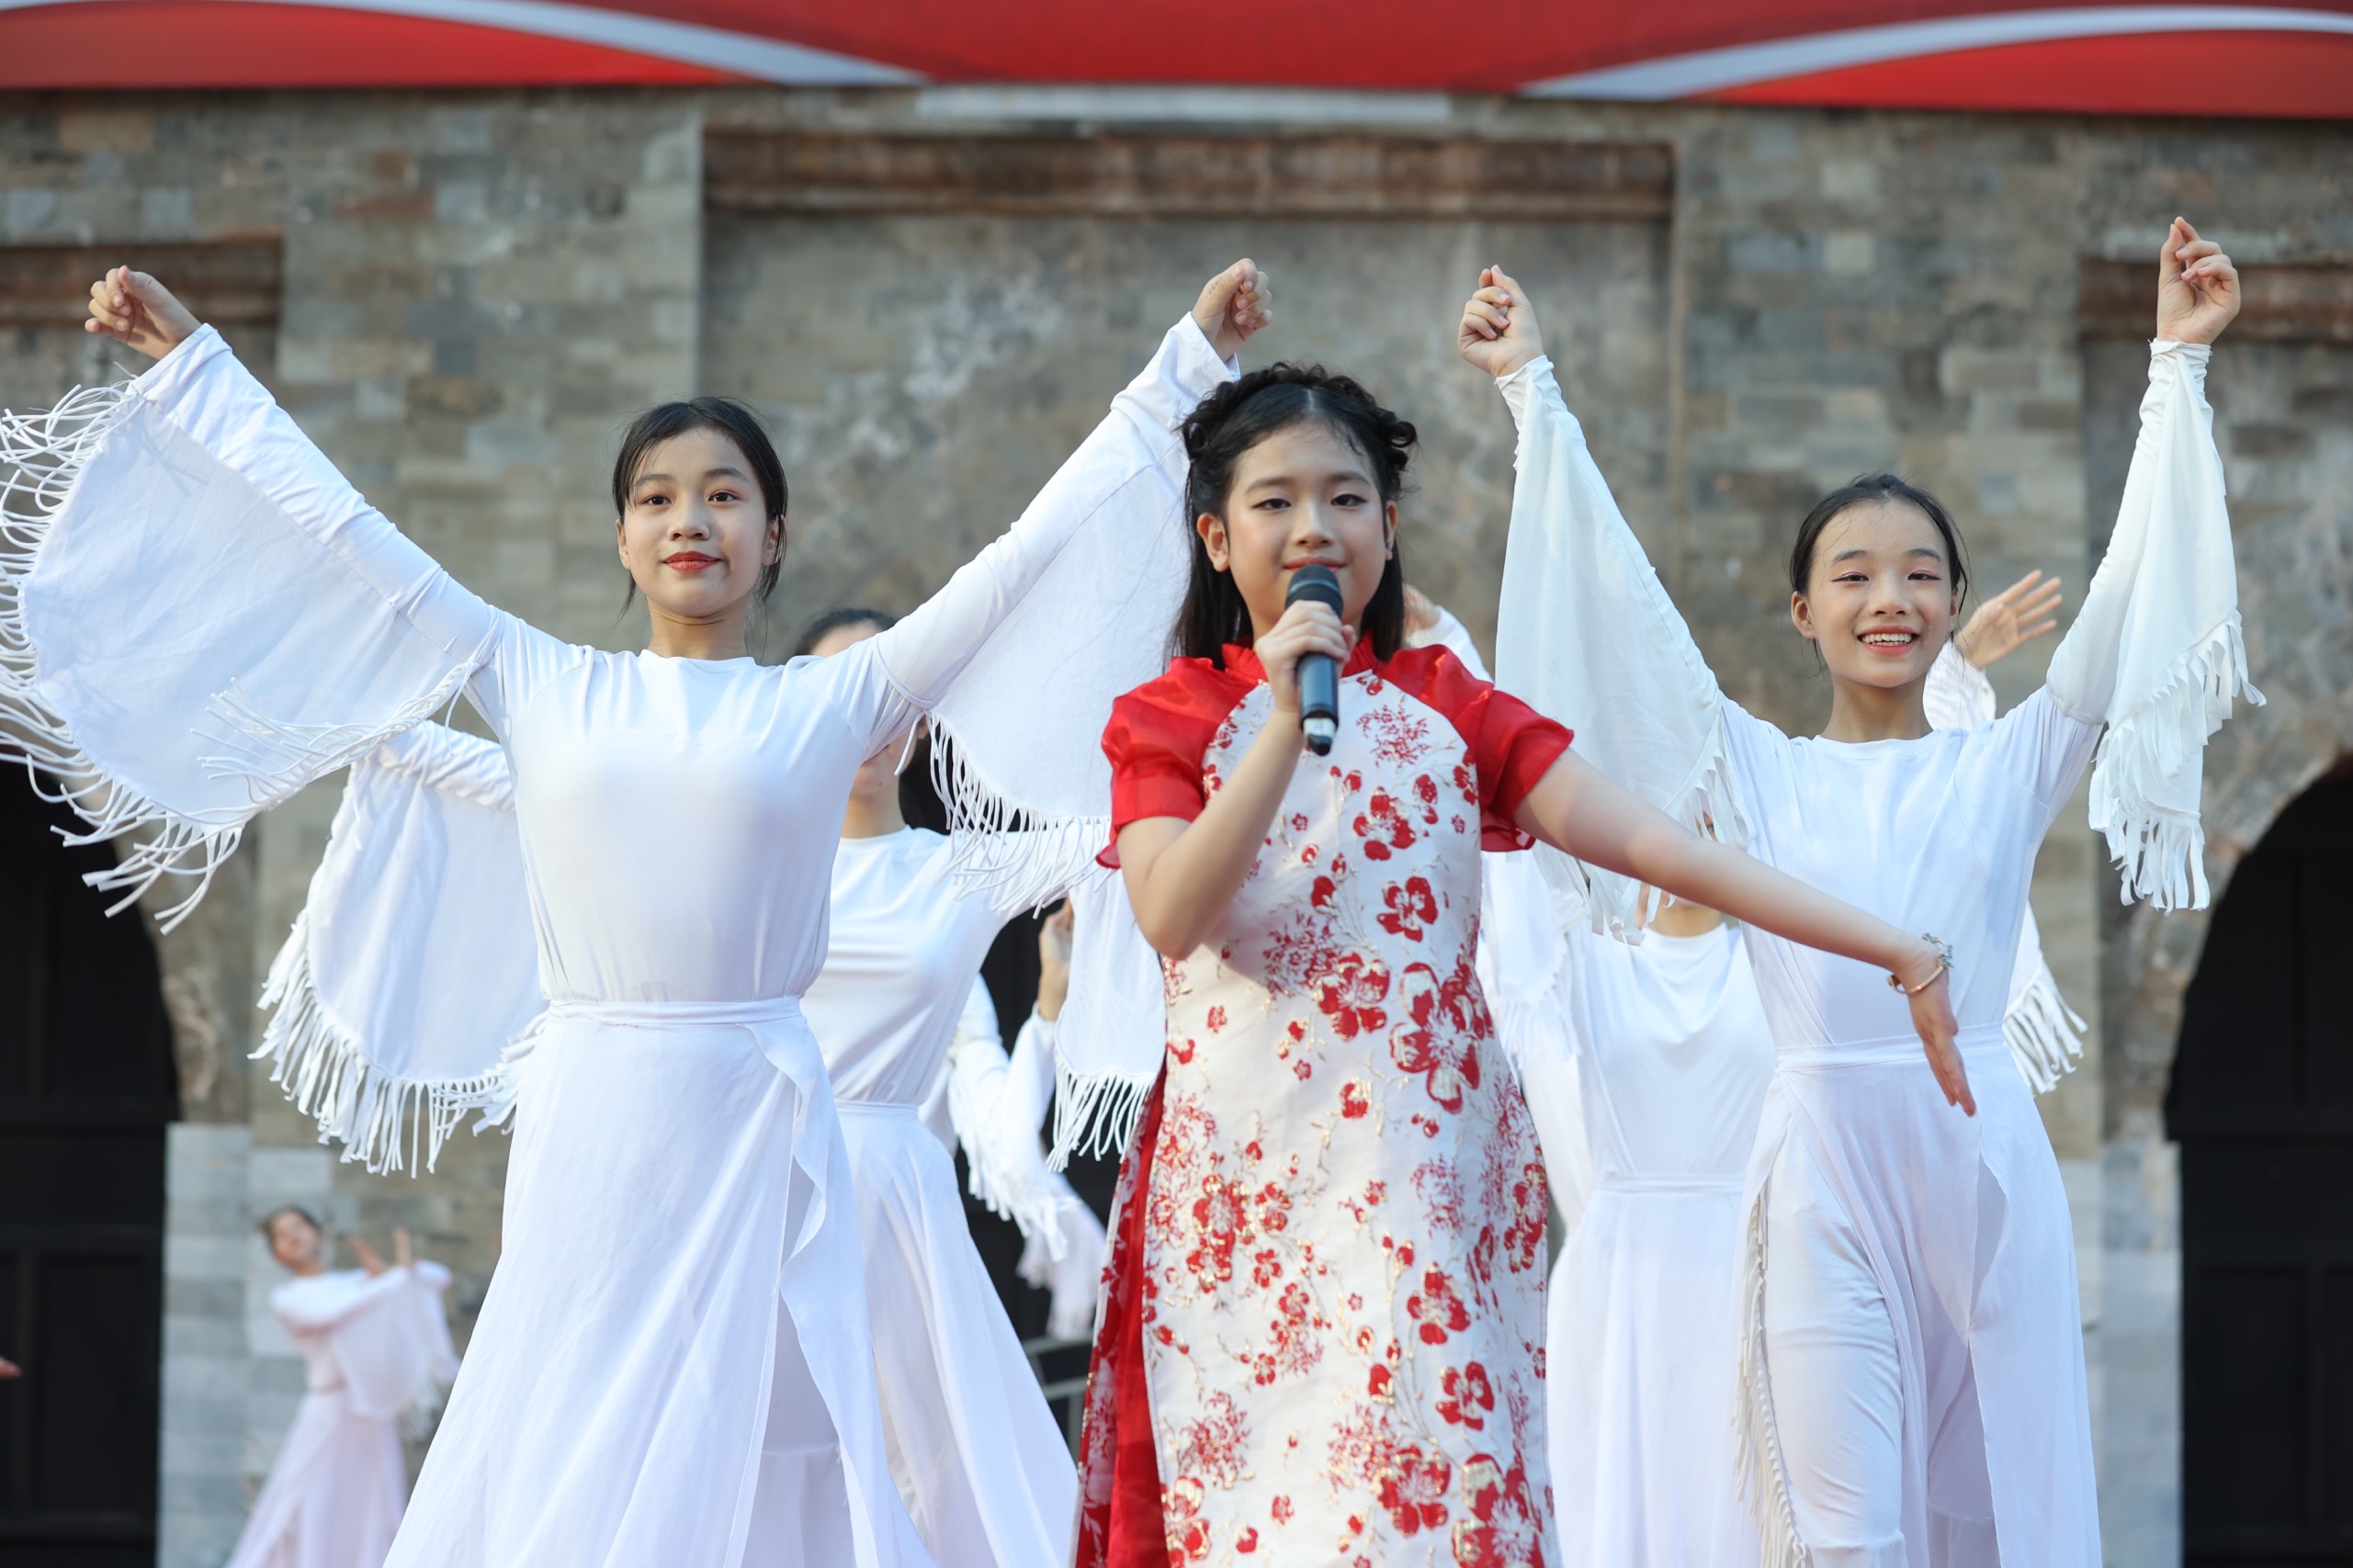 Ấn Tượng Ca Sĩ Nhí đa tài Birdy Lê Khánh Ngân trong chương trình: “Ngày Hội Di sản Văn hóa Việt Nam”